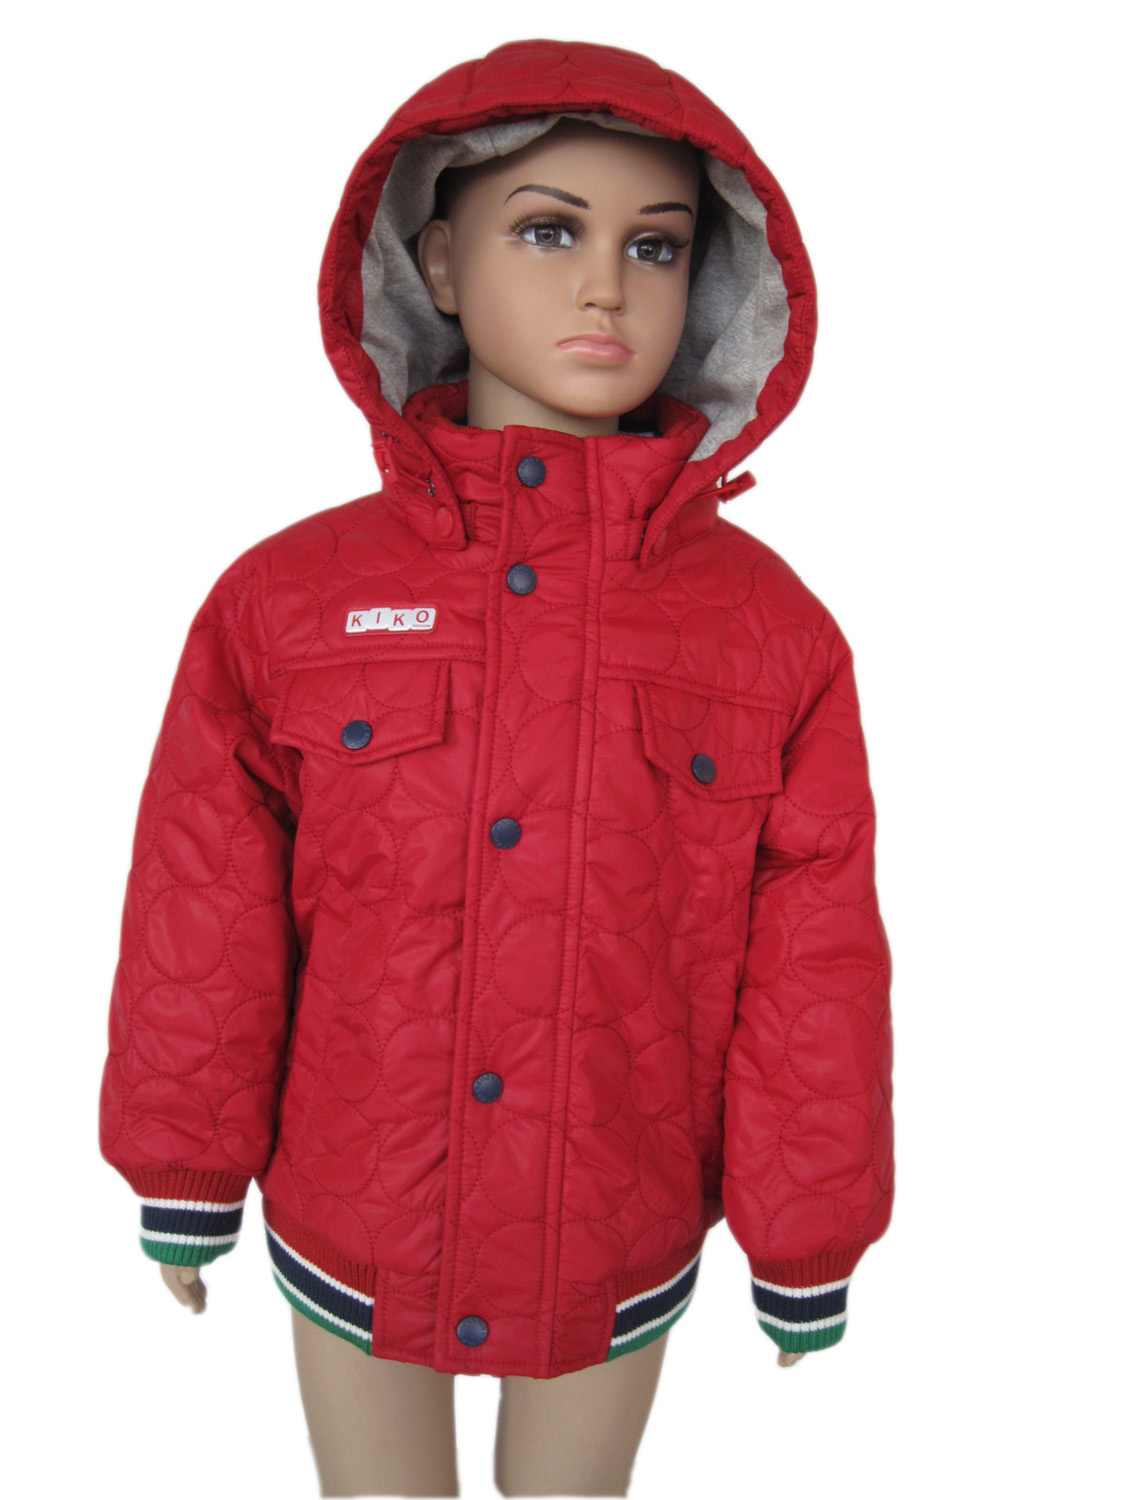 Валберис куртки мальчик. Вайлдберриз зимние куртки для мальчиков. Мальчик в малиновой куртке. Детская куртка Kiko. Модели детских курток для мальчиков.